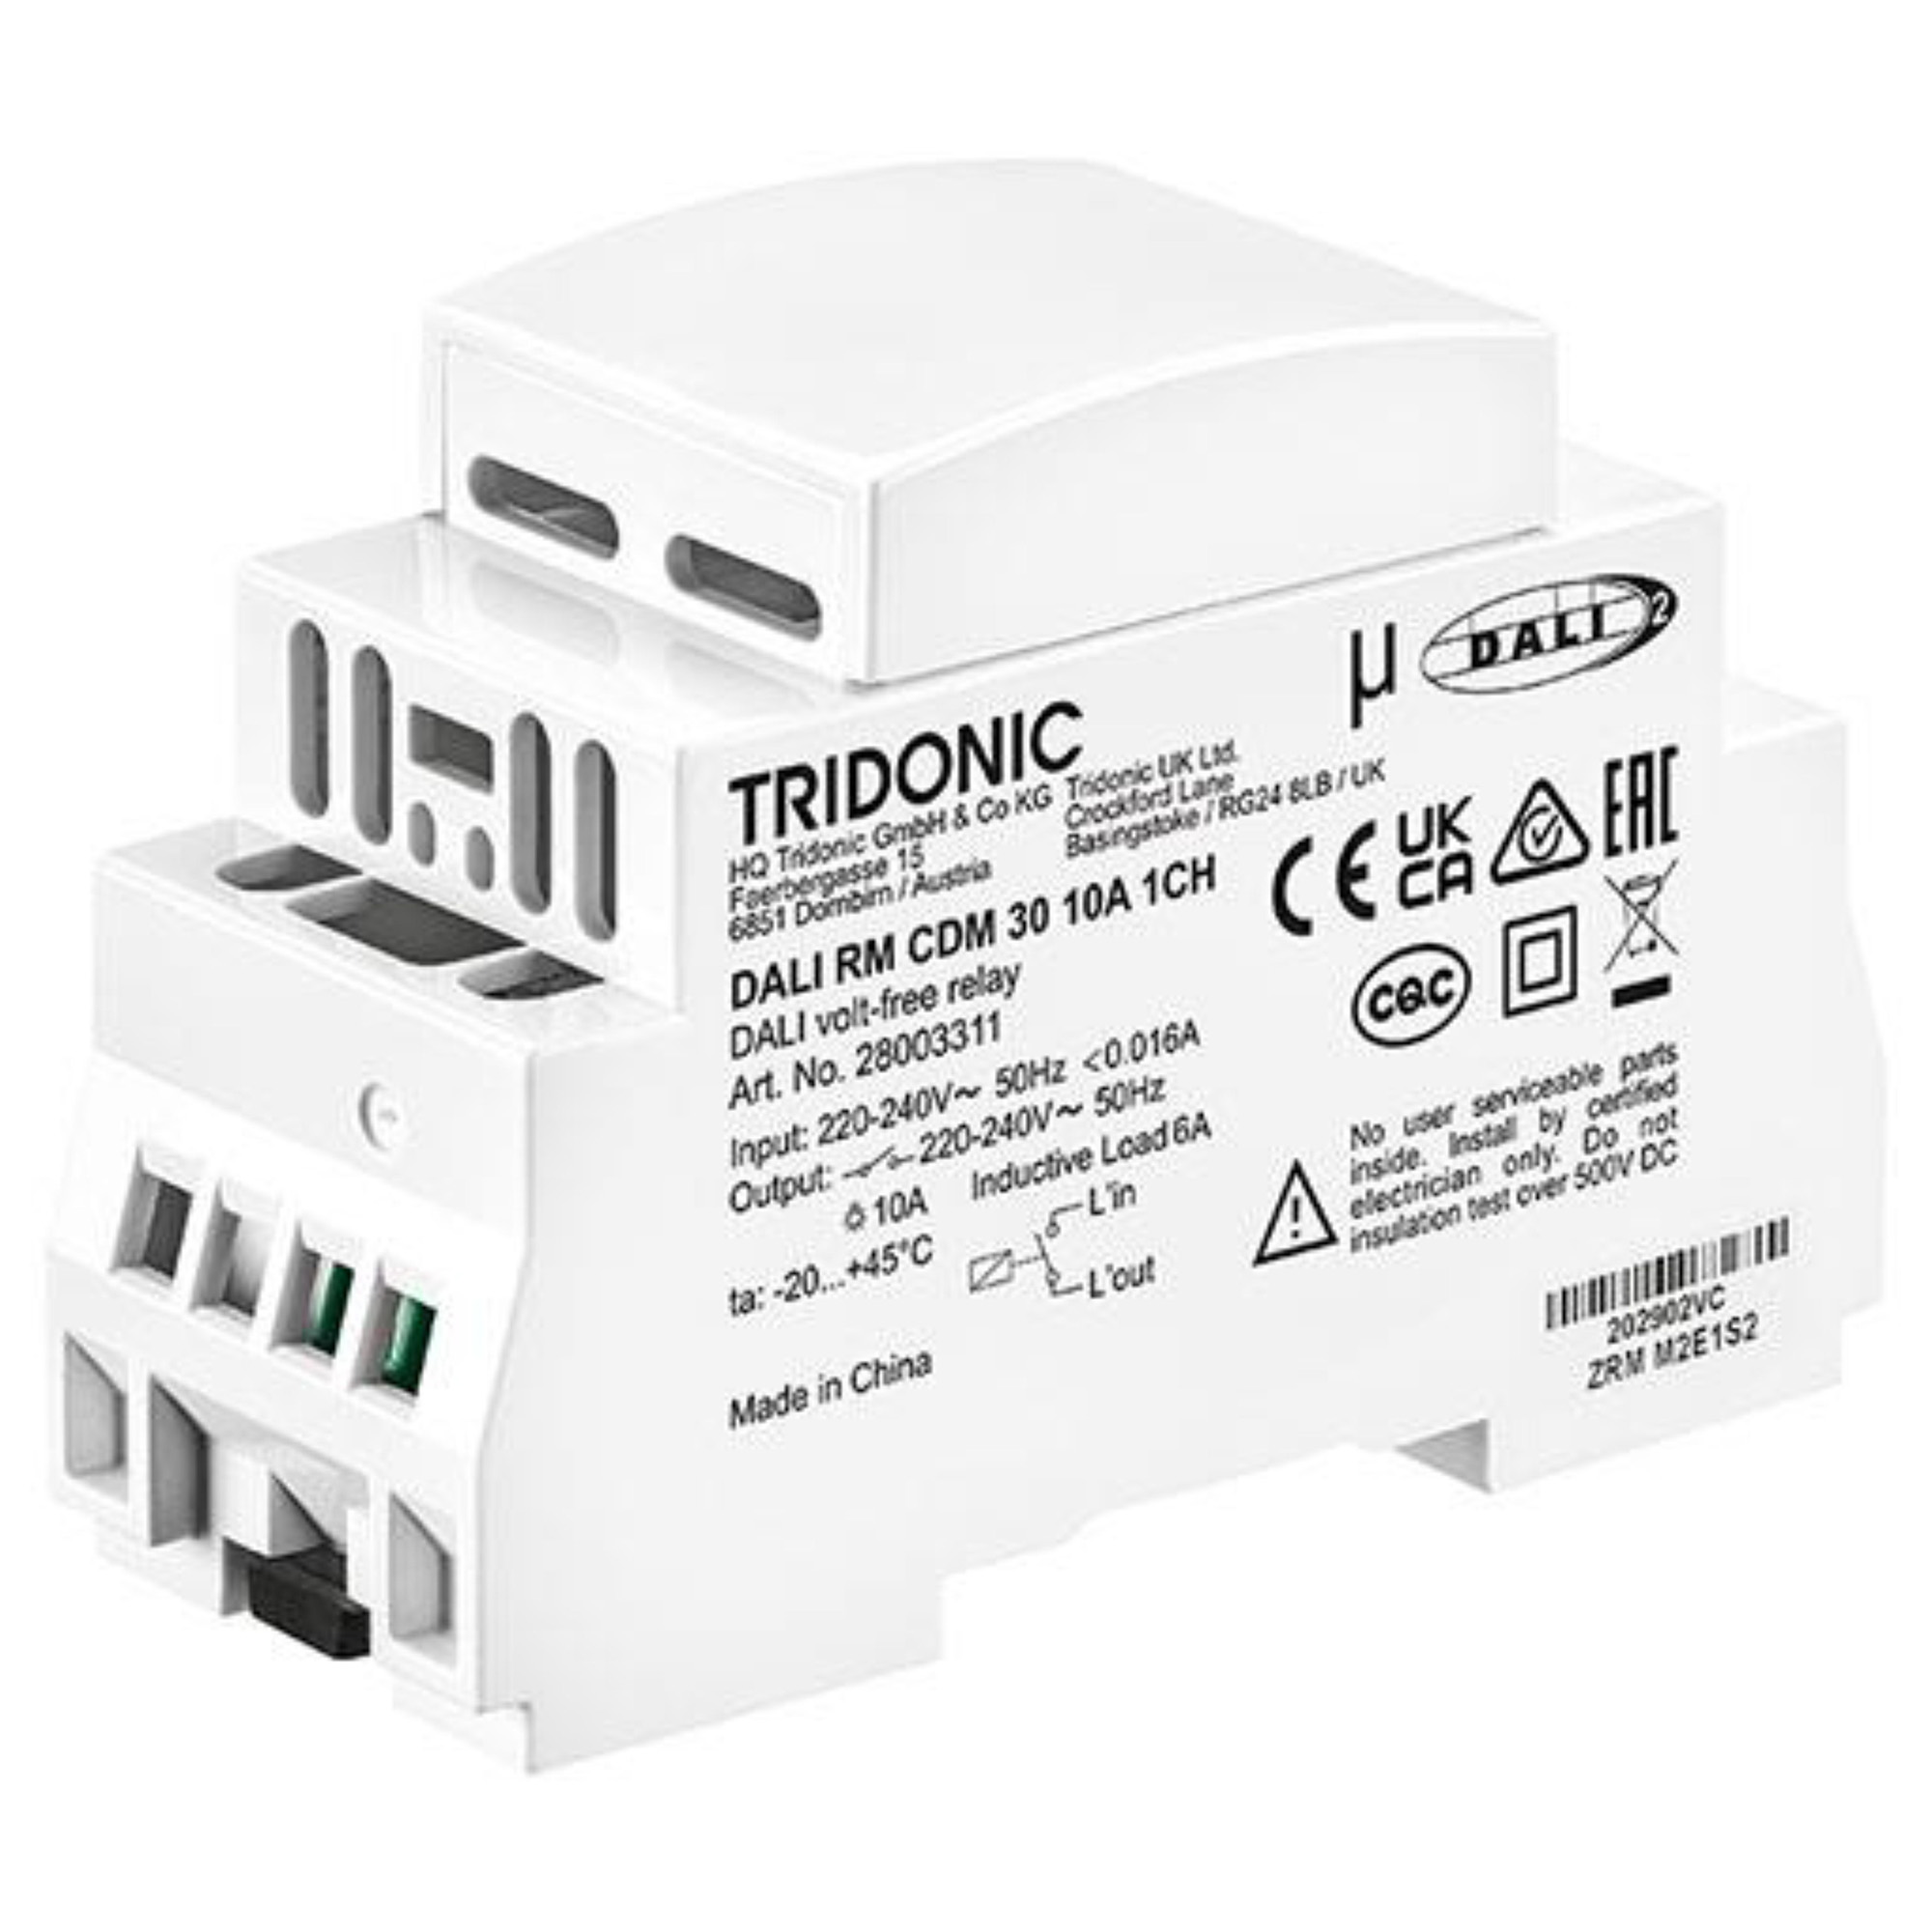 28003311  Tridonic,DALI RM CDM 30 10A 1CH  - DALI-2 Single channel relay , Made In PRC, 5yrs Warranty